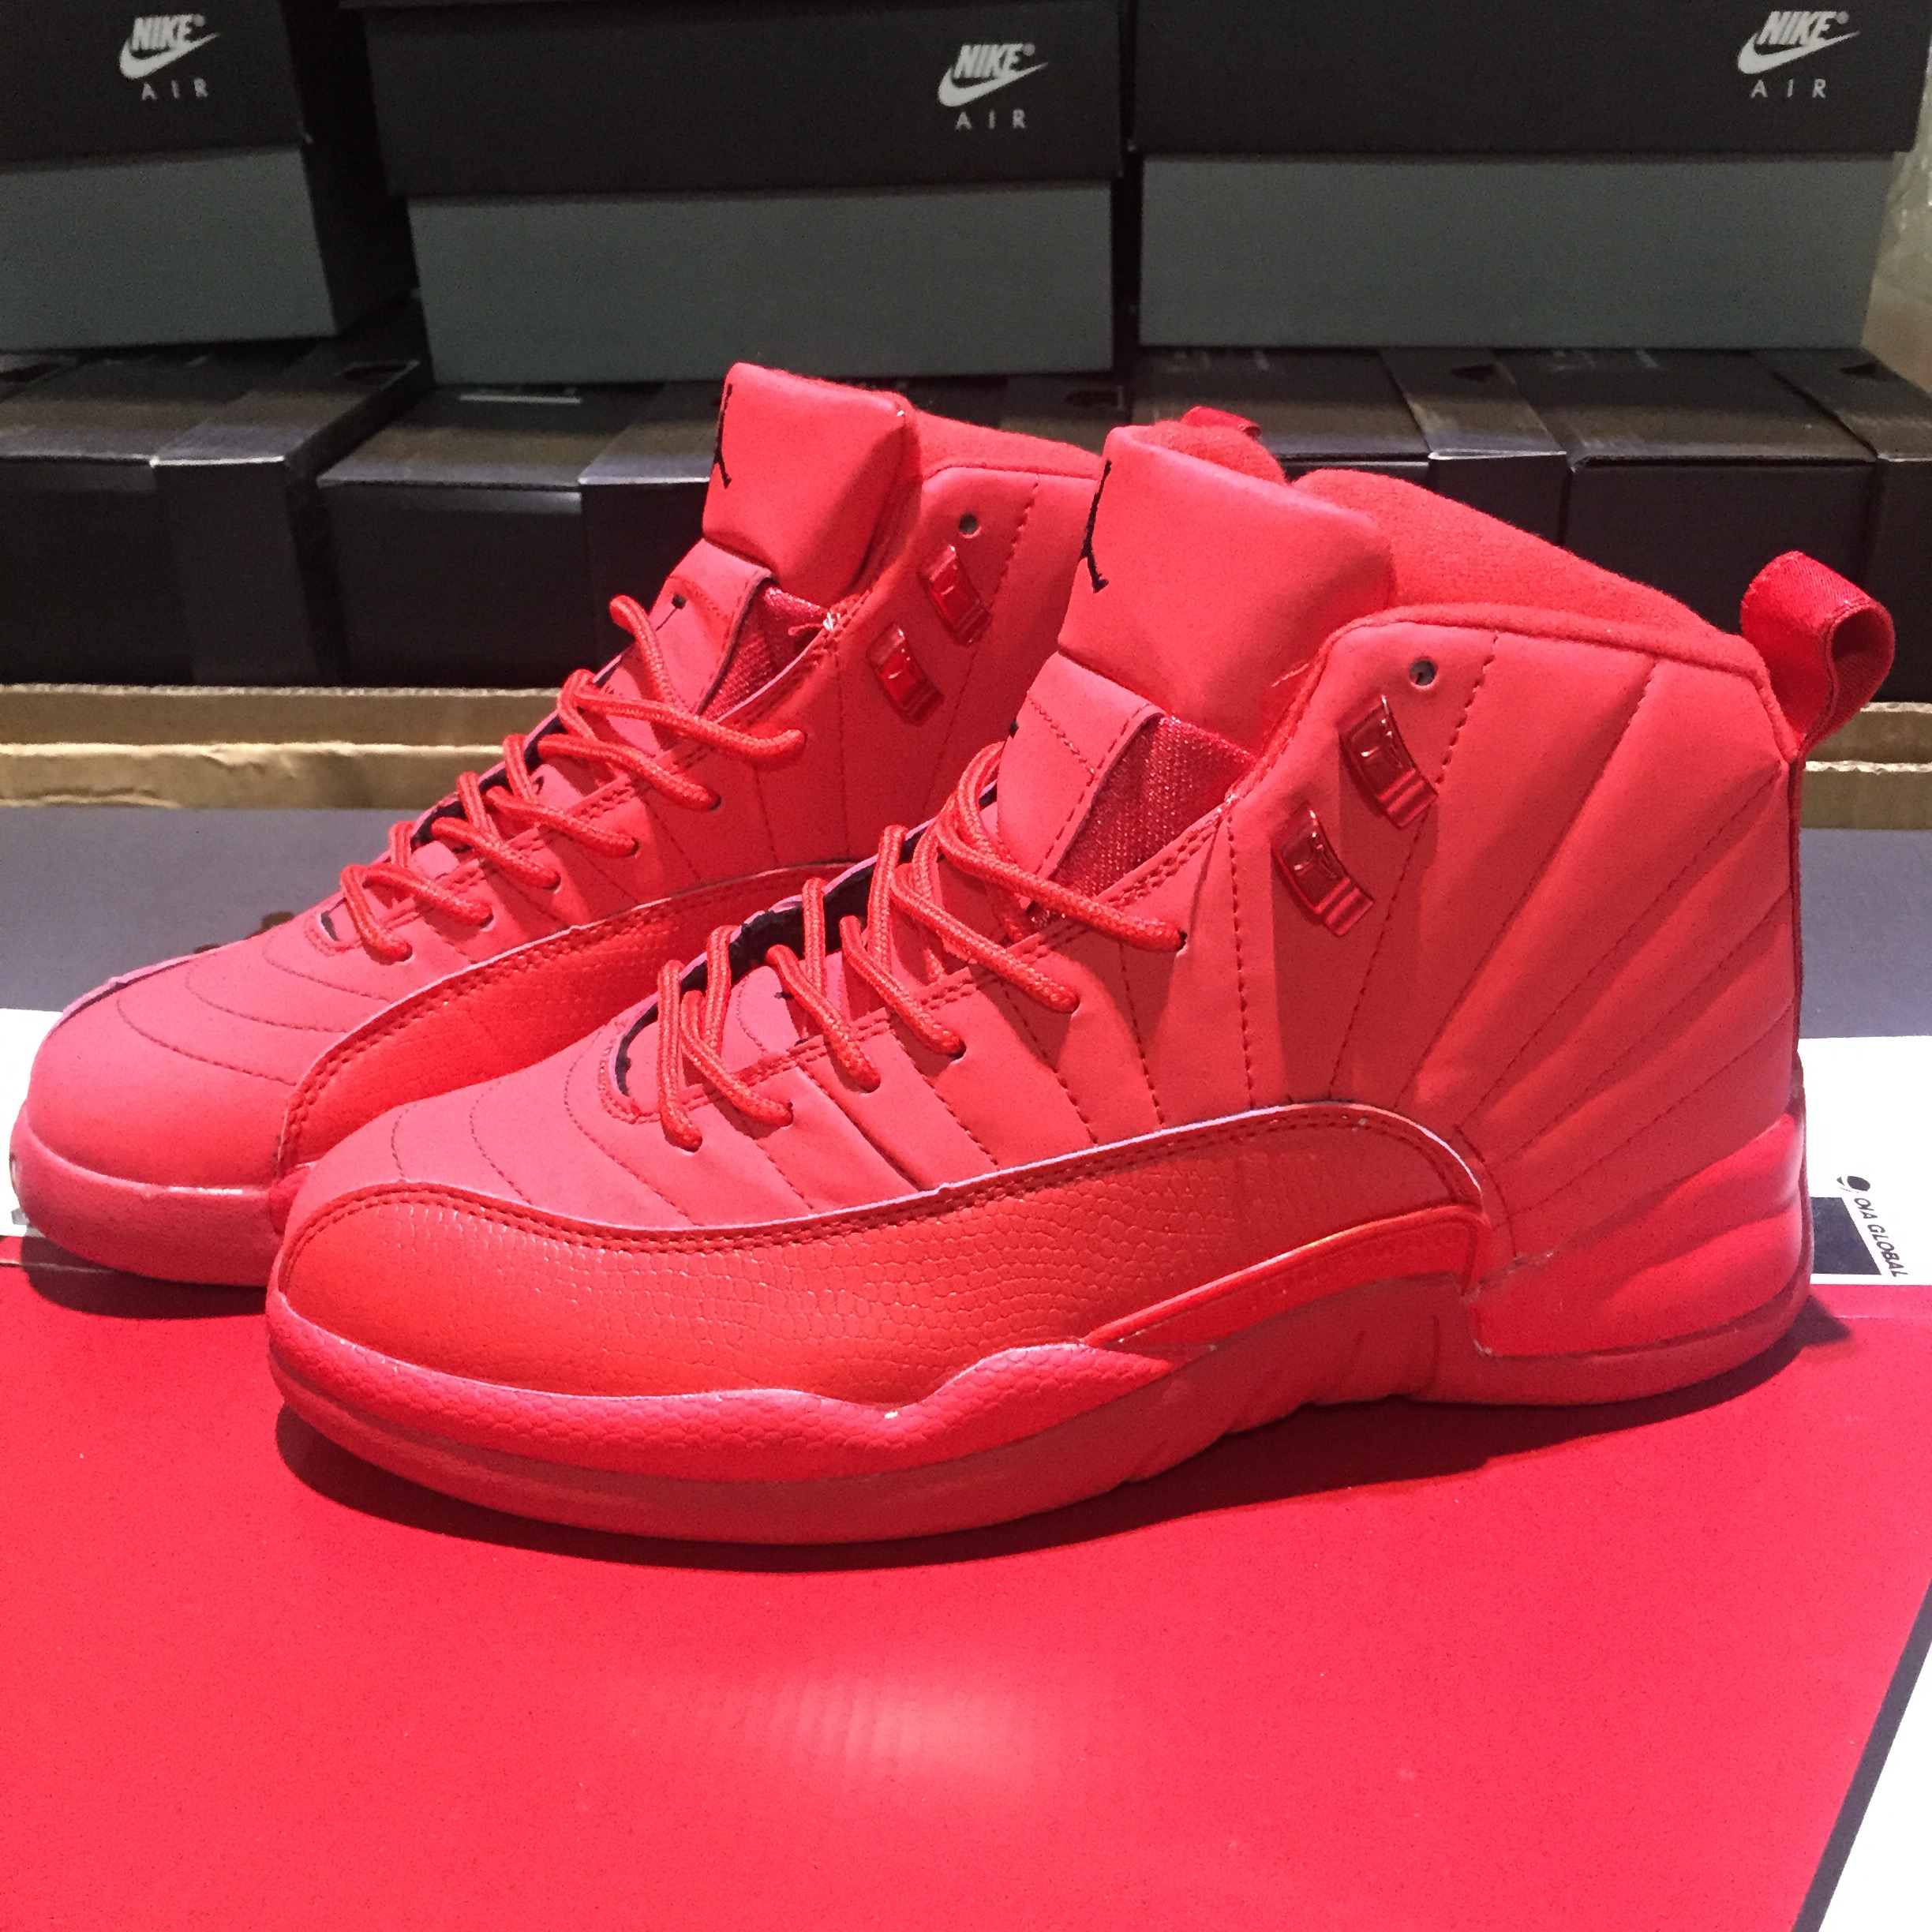 2018 Air Jordan 12 All Red Shoes